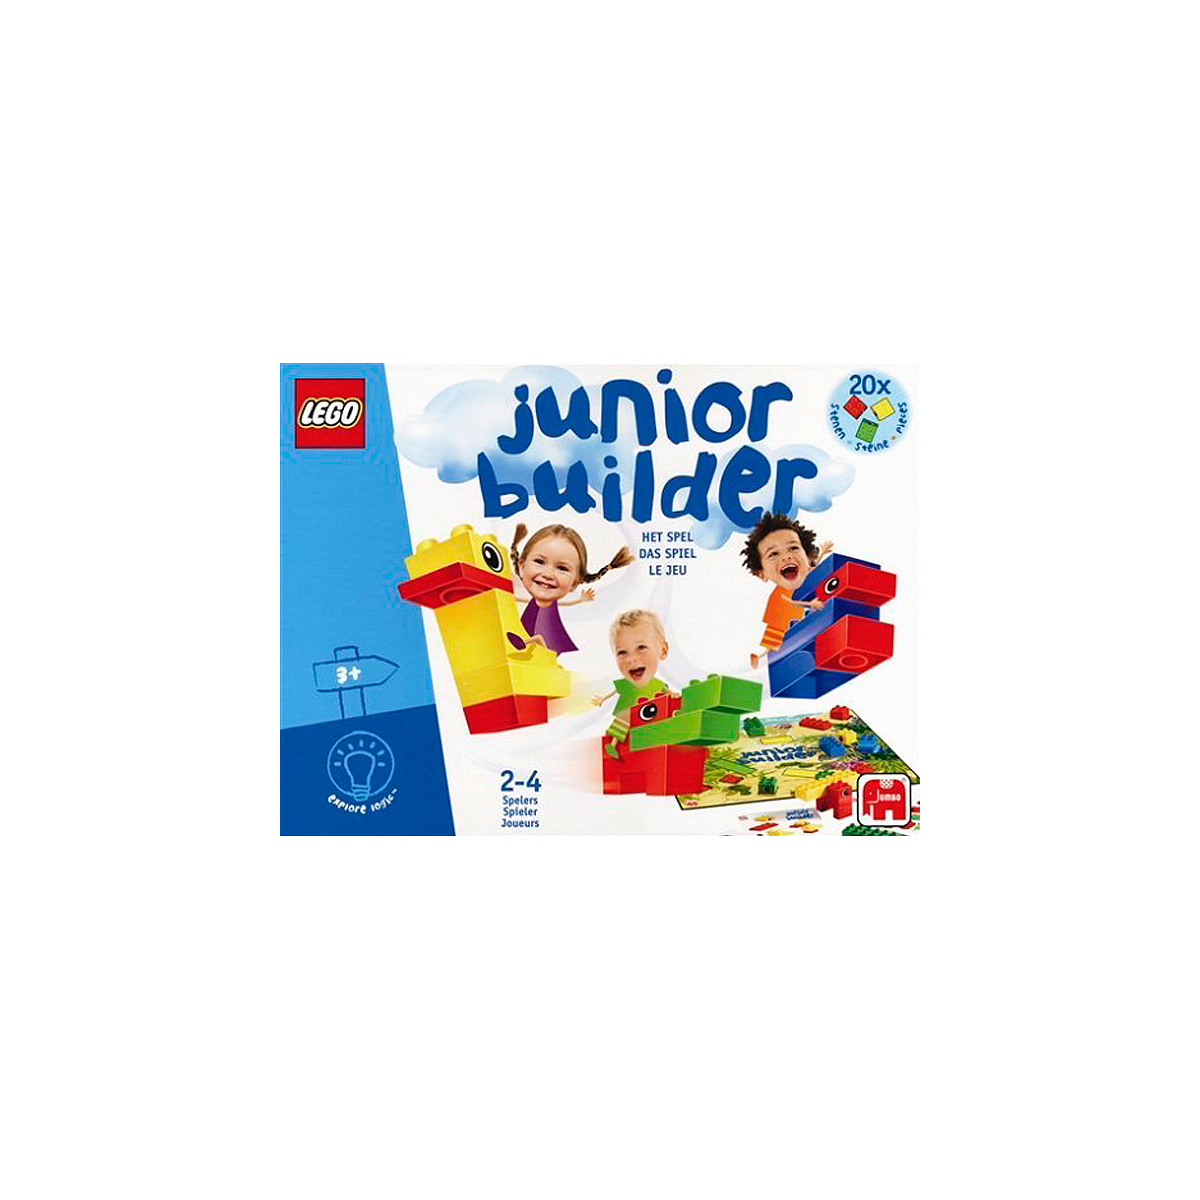 Lego 3121 - Junior builder